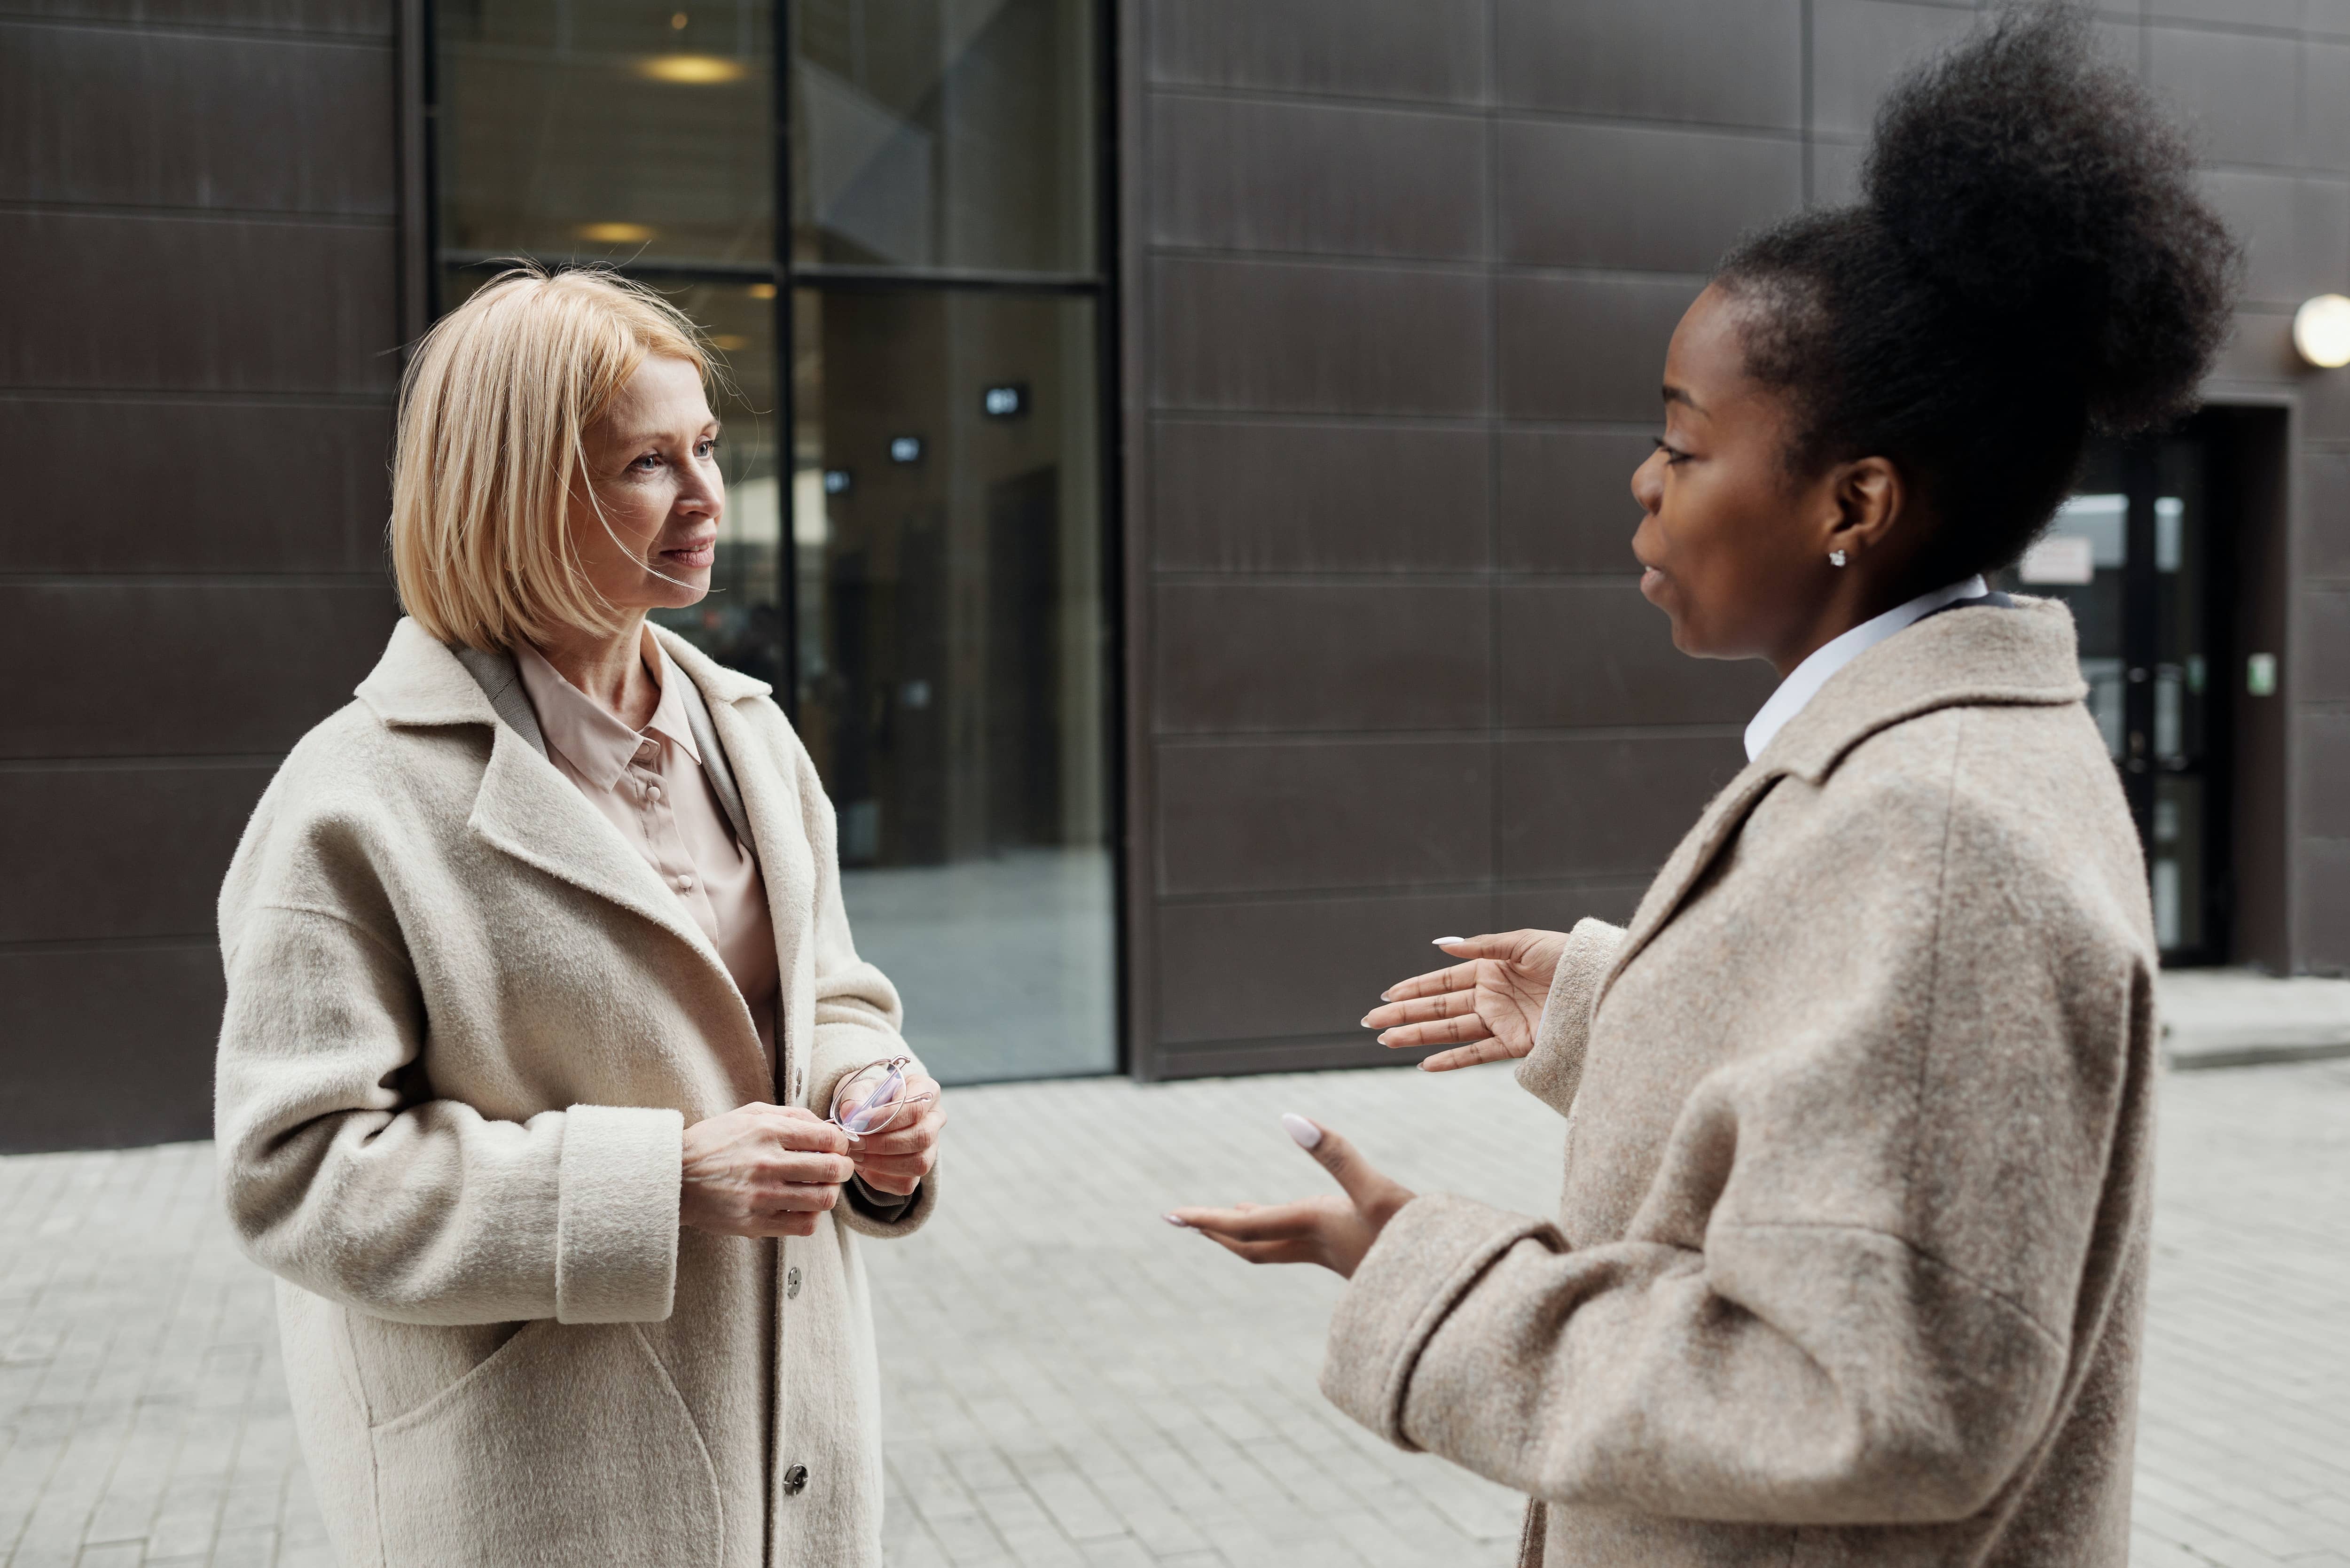 Two women talking outside an office building